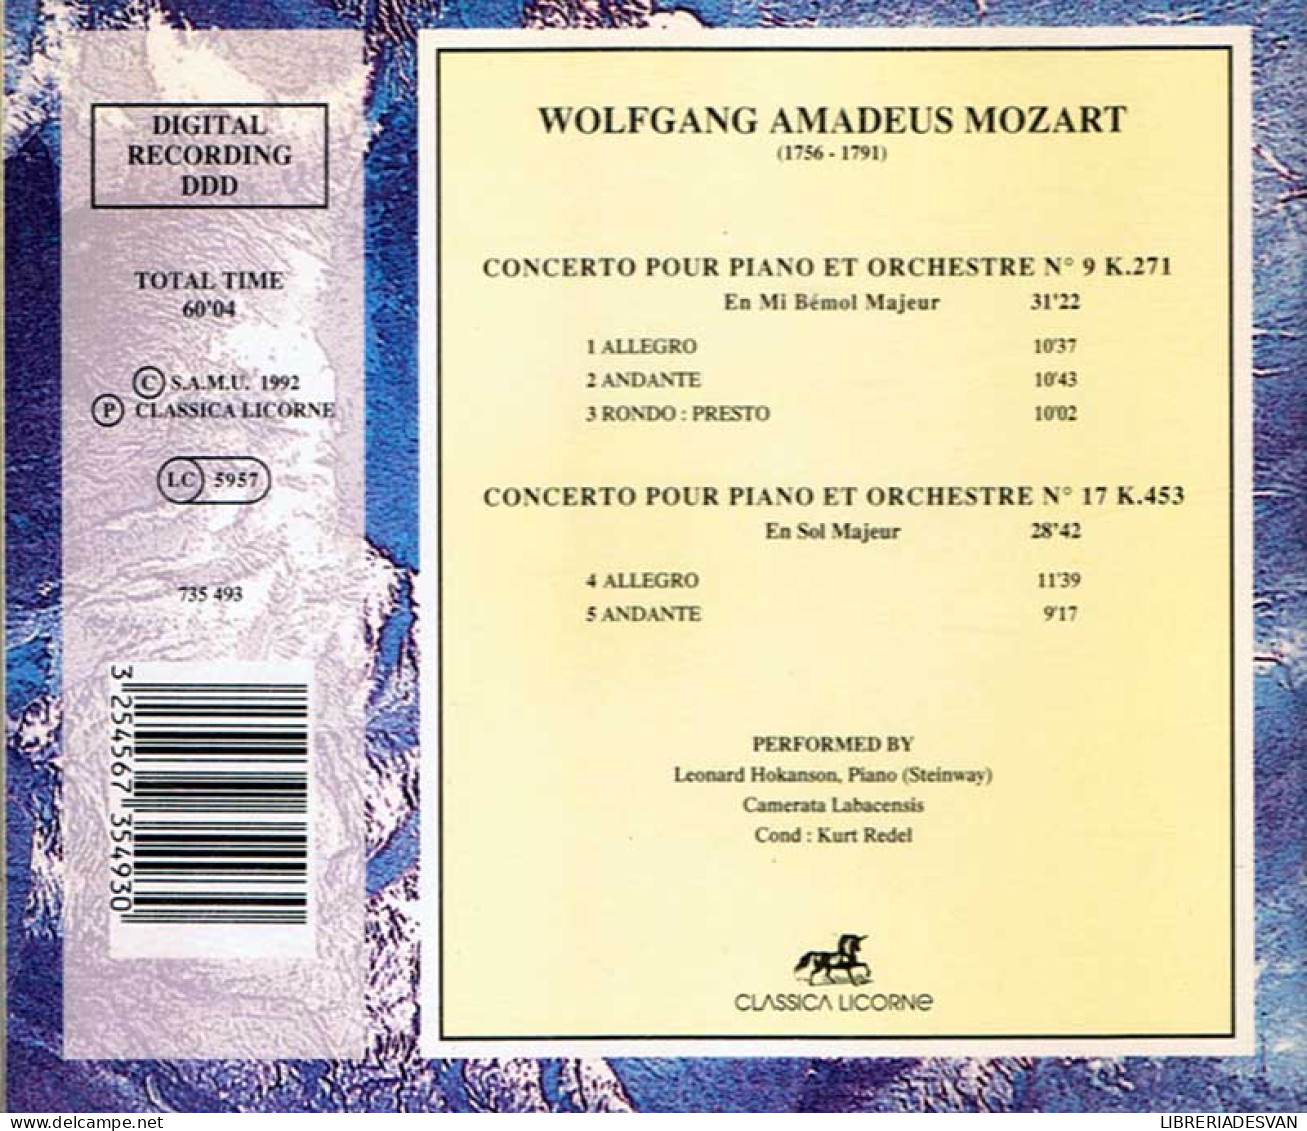 Mozart - Concerto Pour Piano Et Orchestre No. 9 «Jeune Homme» & 17. CD - Klassik